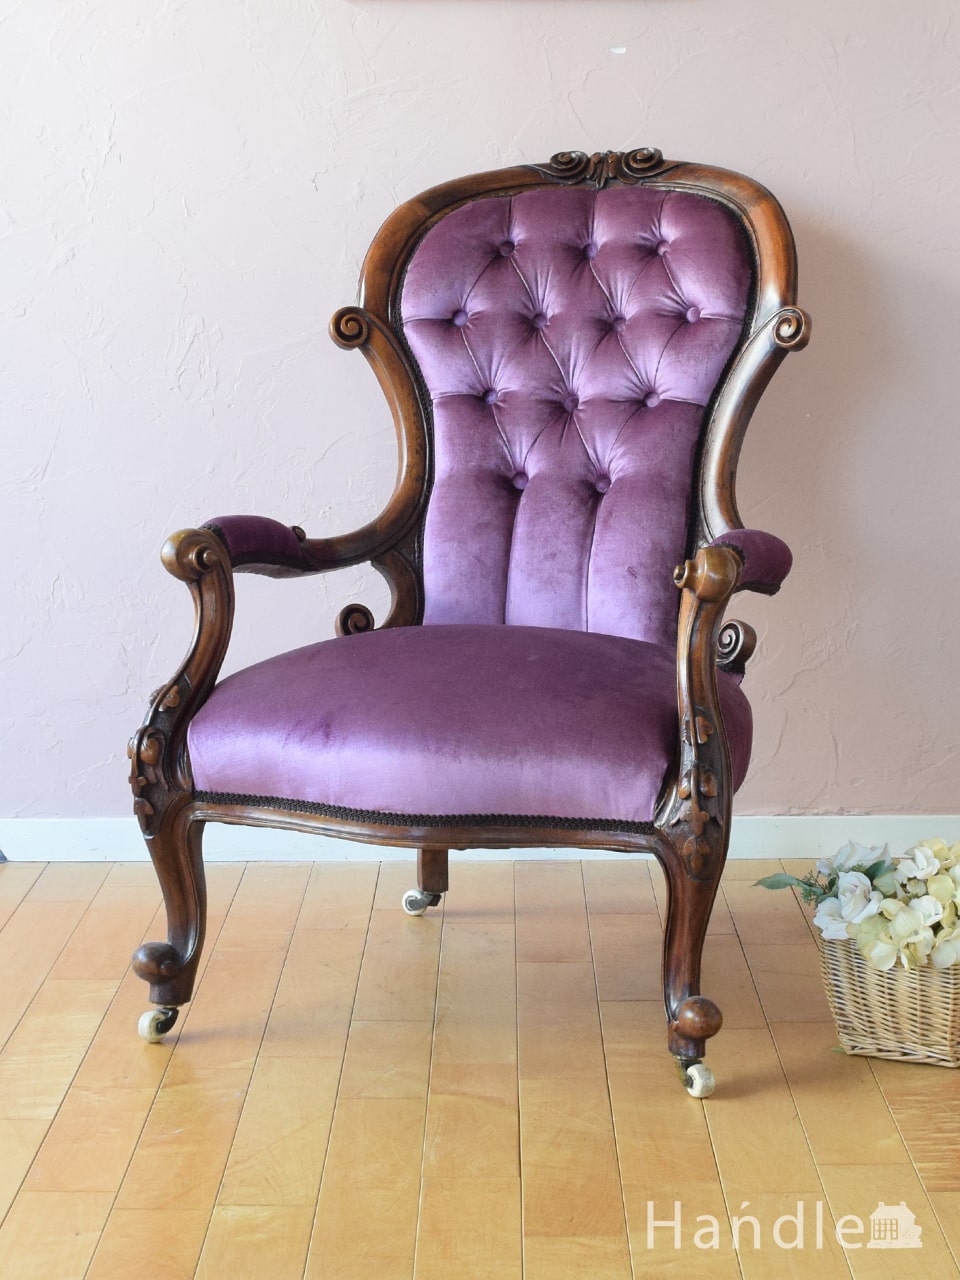 イギリスから届いたアンティークの椅子、ウォールナット材の美しいパーソナルチェア (q-466-c)